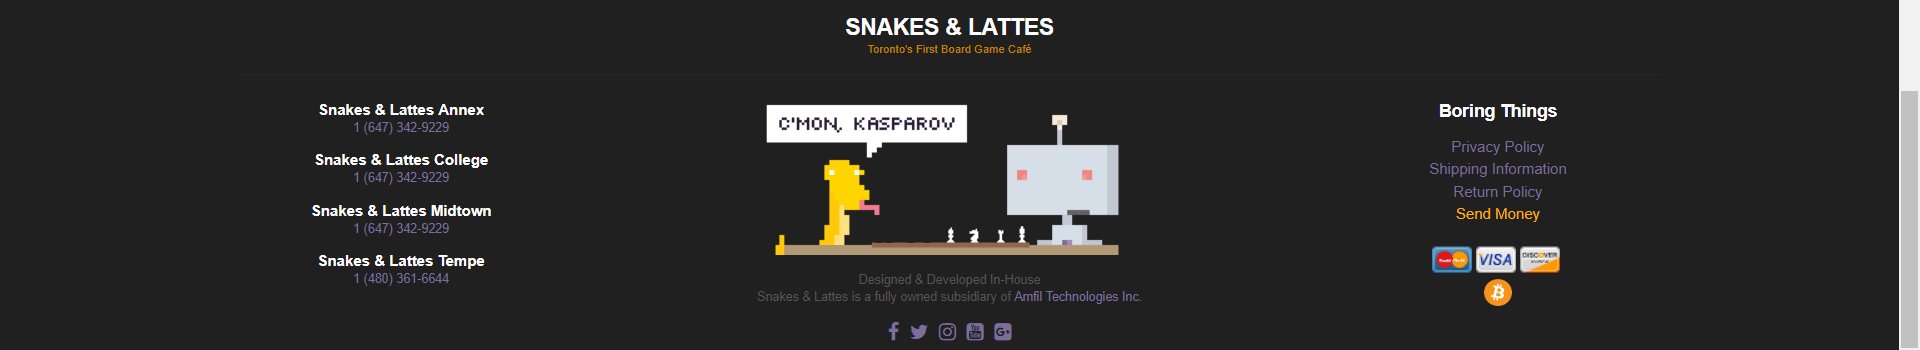 Змеи и латте с указанием различных локаций